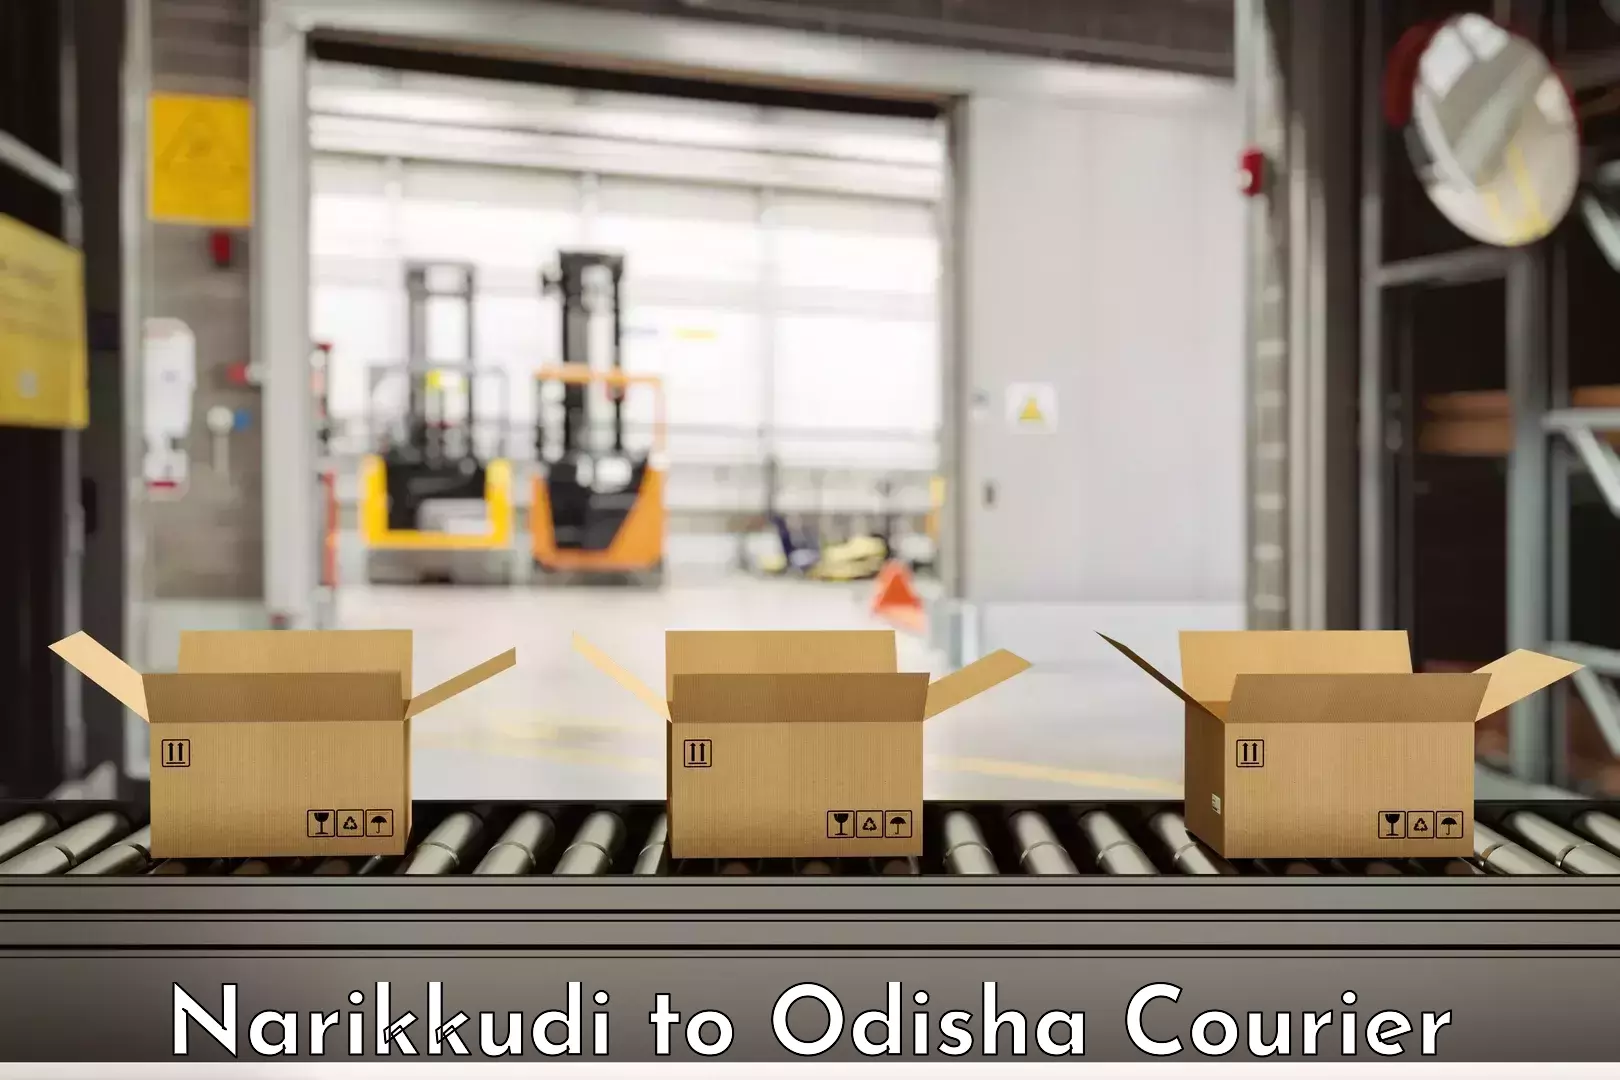 Furniture transport professionals Narikkudi to Tikiri